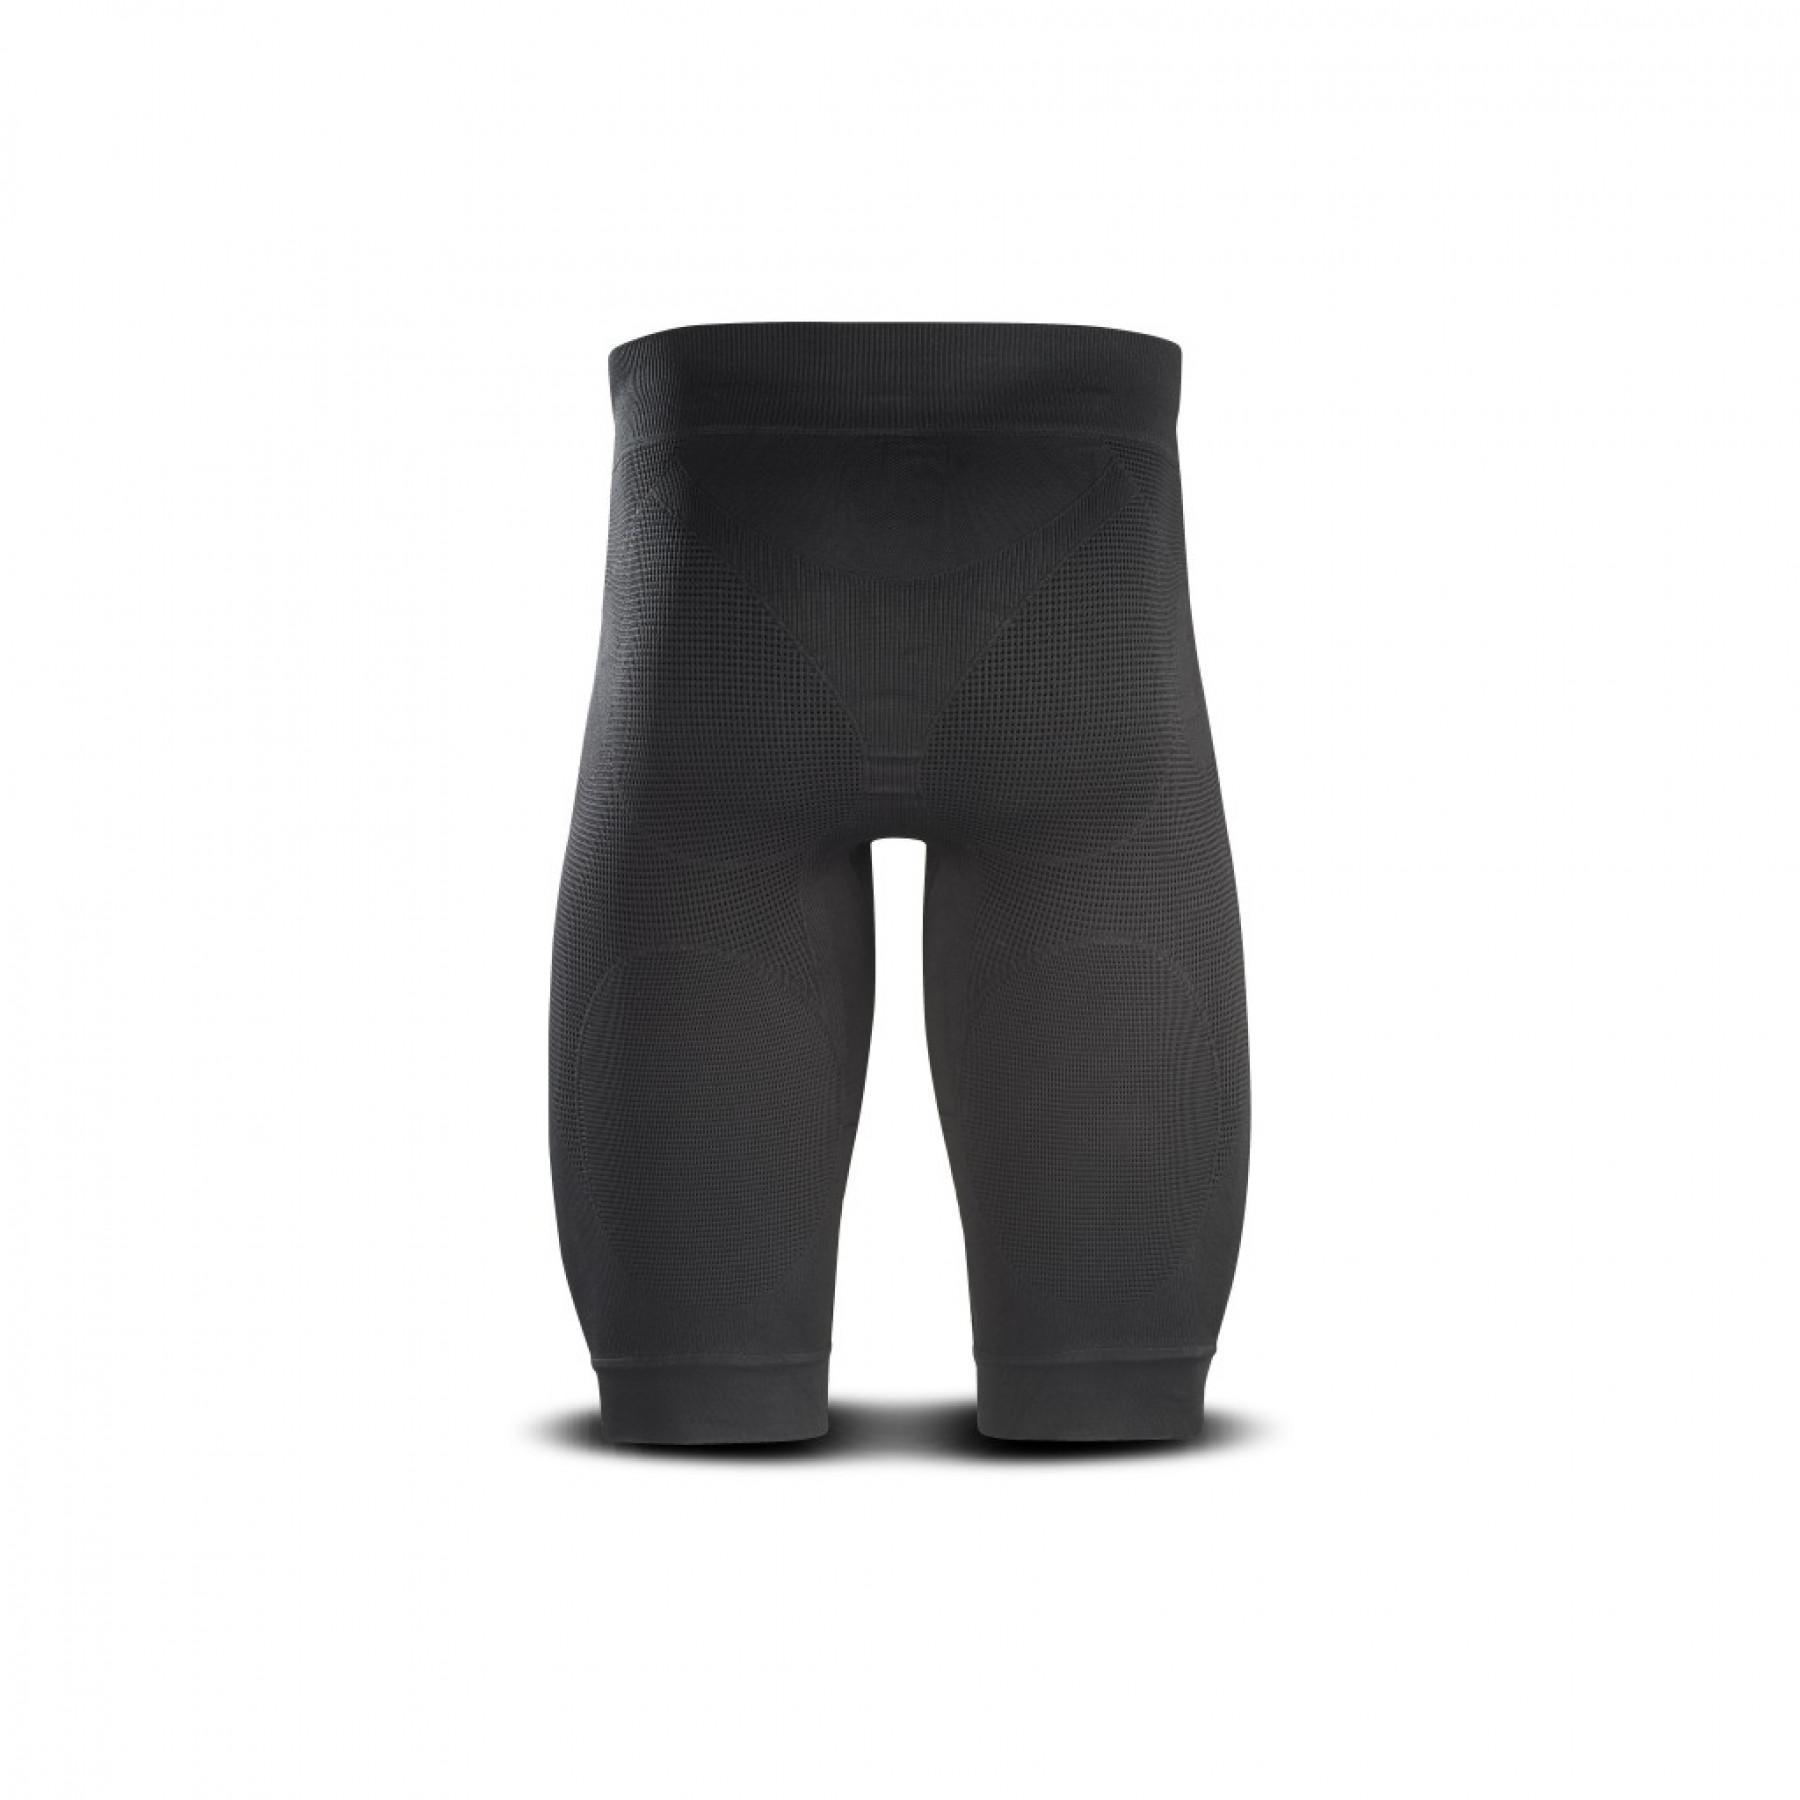 Compression shorts BV Sport CSX Noir